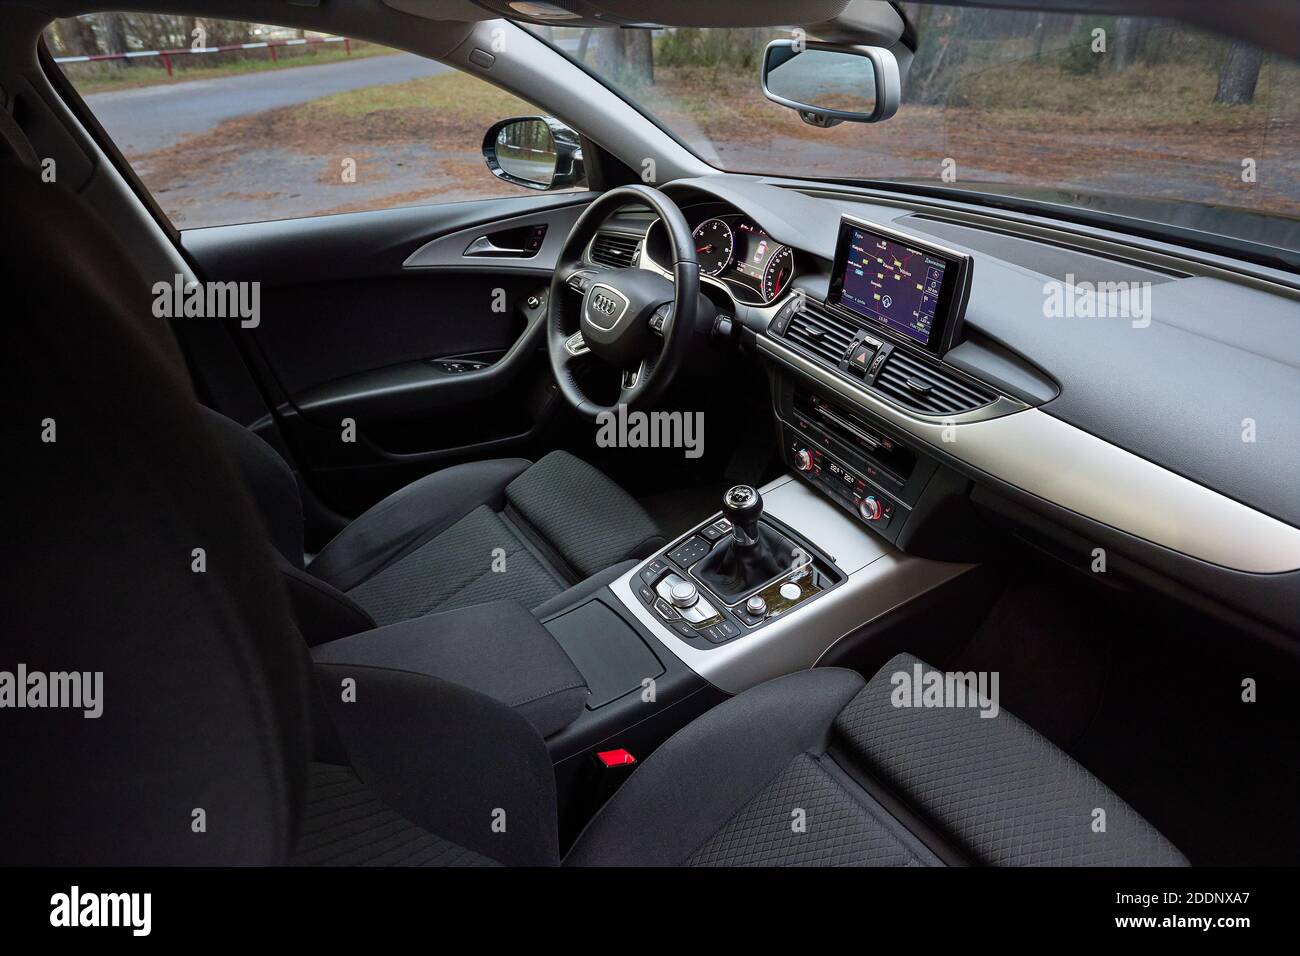 GRODNO, BÉLARUS - DÉCEMBRE 2019 : intérieur de l'Audi A6 4G C7 dans des tons sombres comme exemple d'équipement technologique d'affichage de véhicule moderne avec GPS Banque D'Images